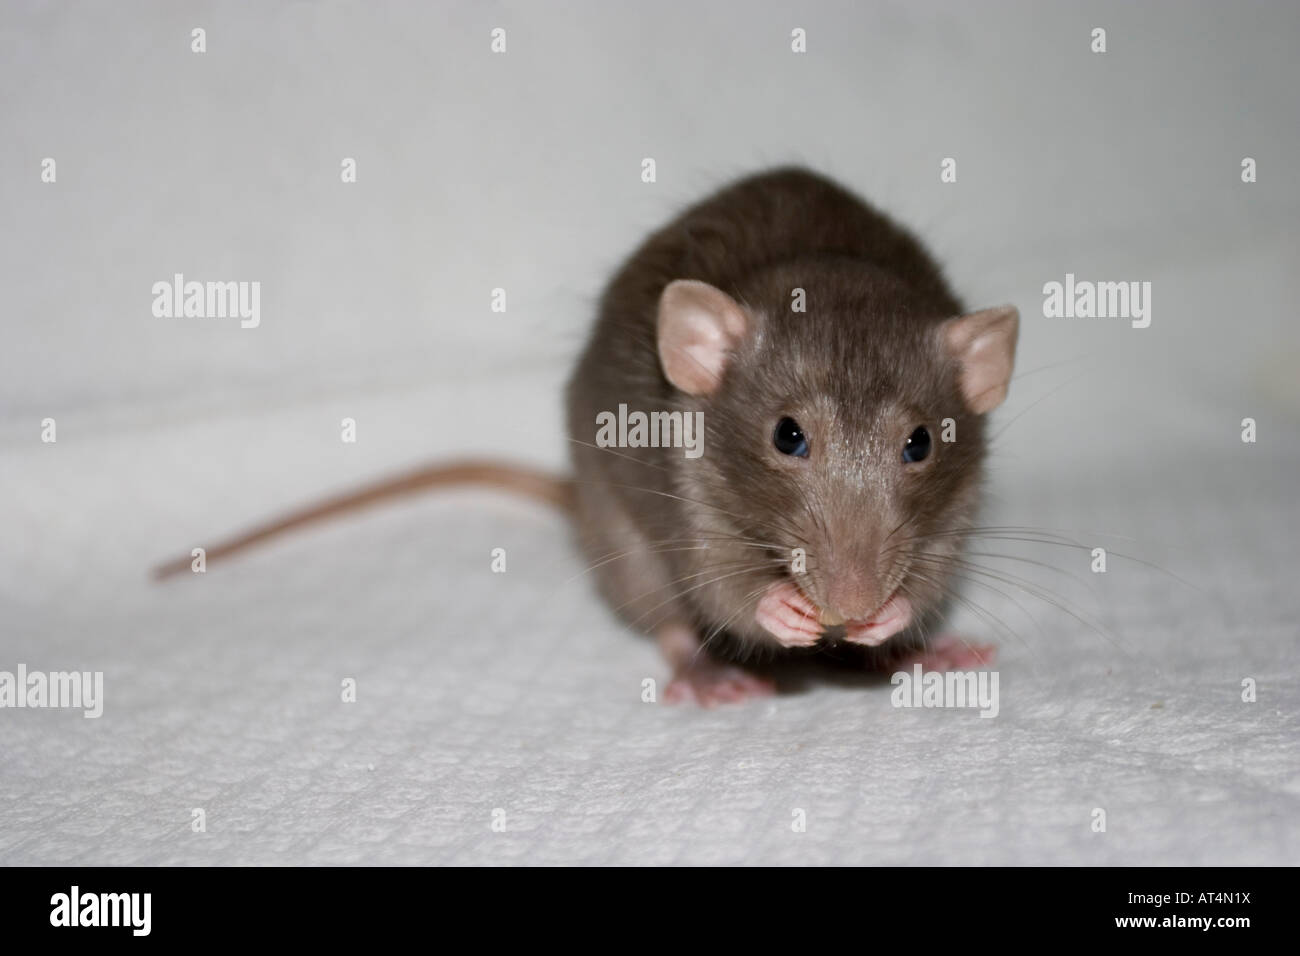 rat dambo pet Dumbo Stock Photo